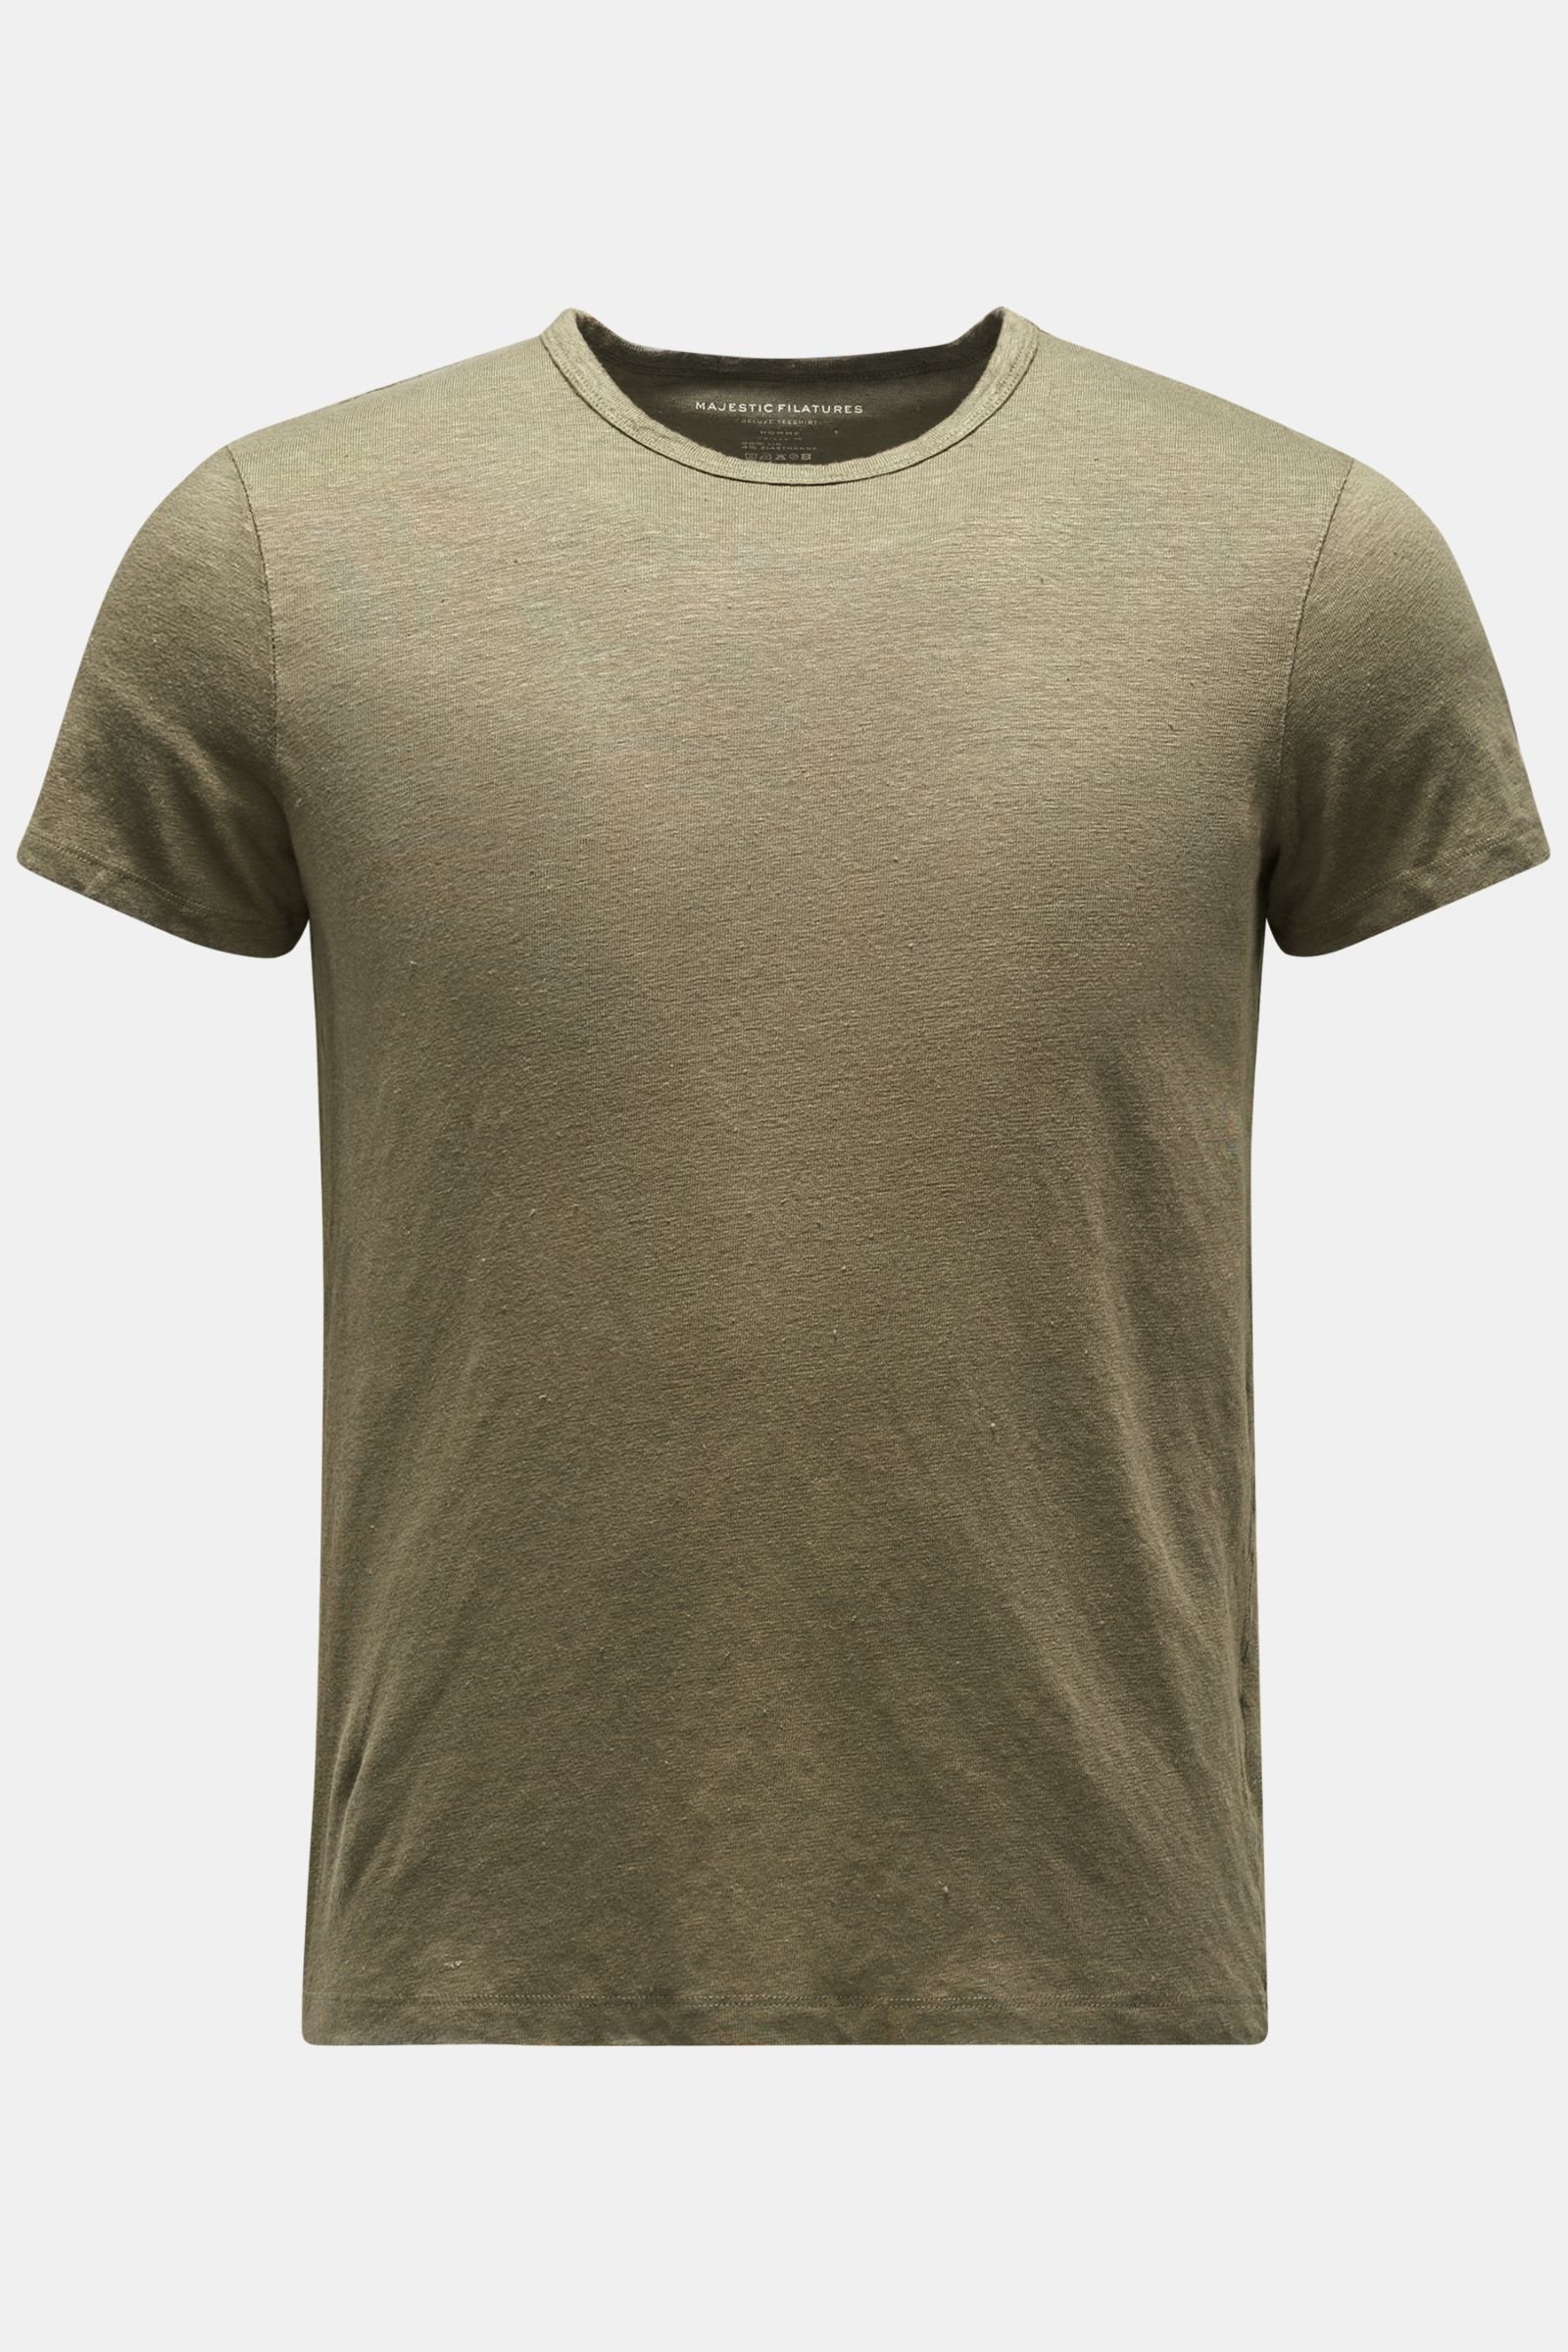 Leinen Rundhals-T-Shirt oliv